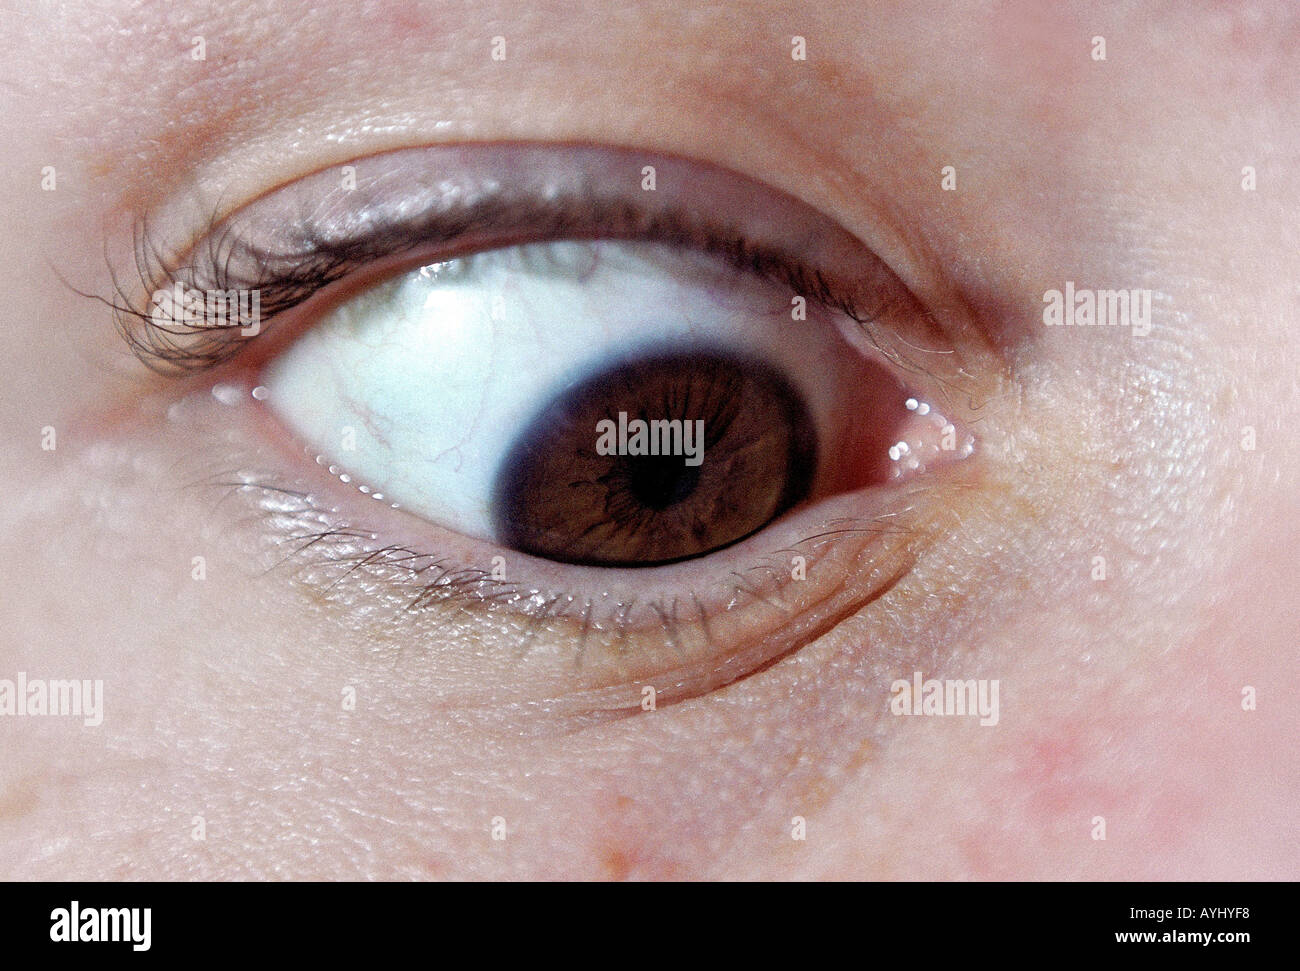 Schielendes Auge mit brauner Pupille Stock Photo